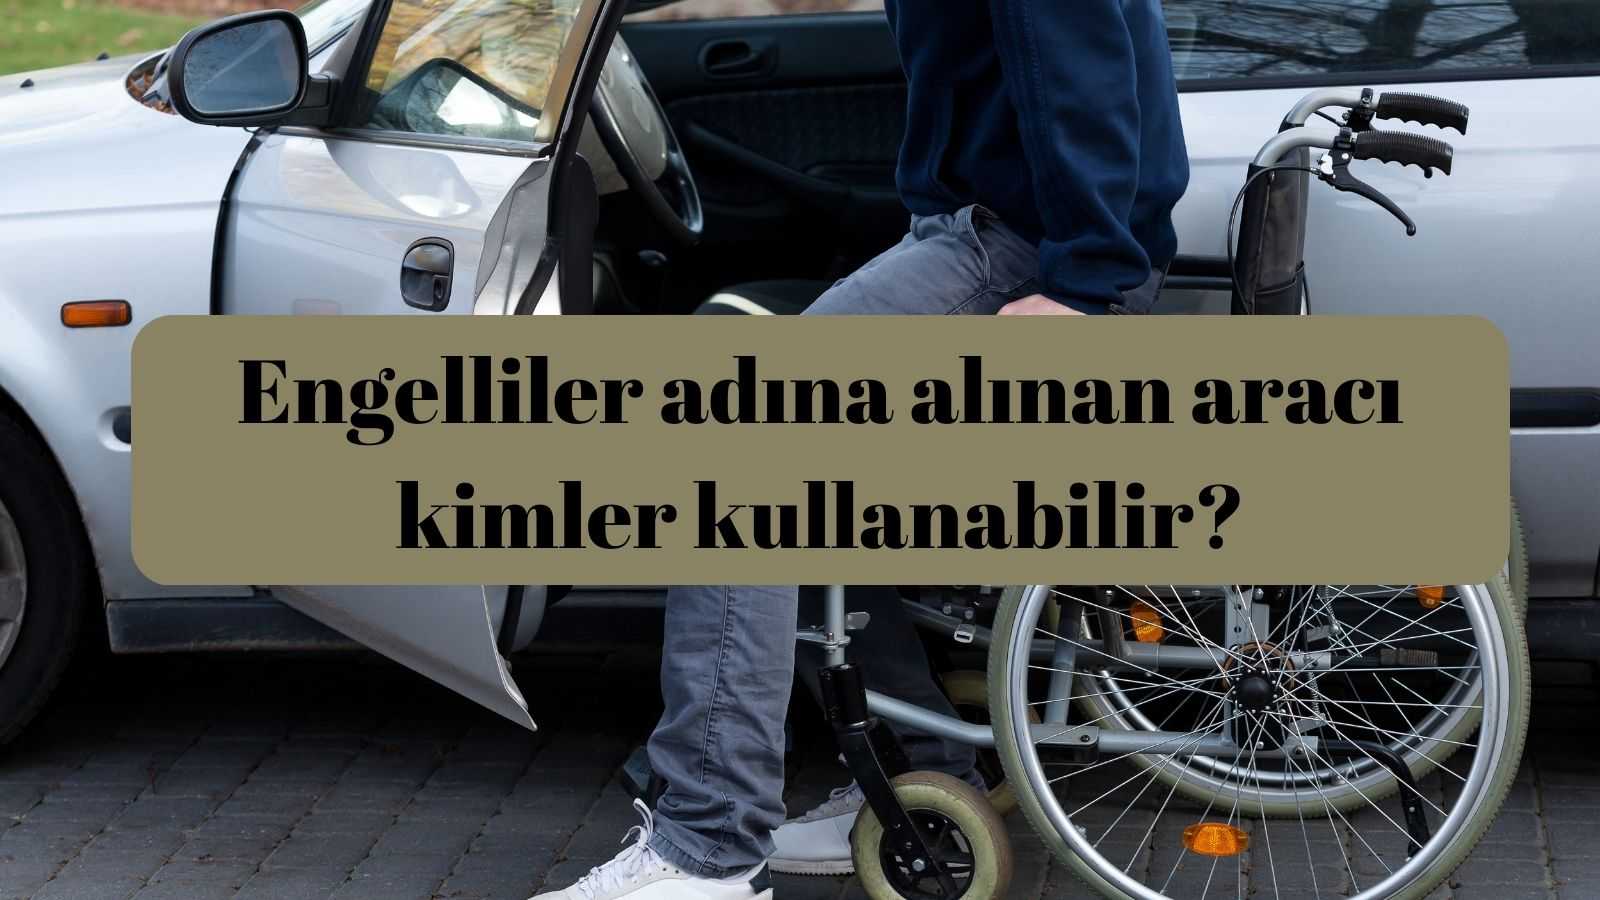 Engelliler adına alınan aracı kimler kullanabilir? Oran Kaç Olmalı?